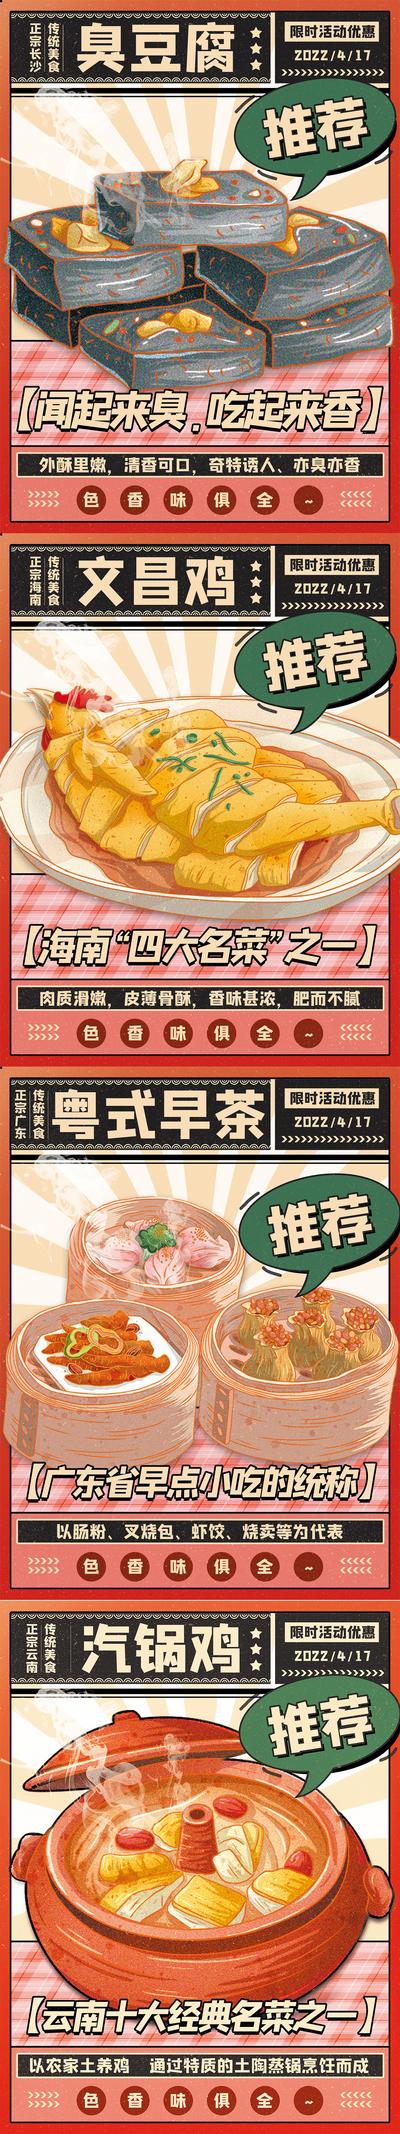 南门网 海报 美食 食物 小吃 餐饮 臭豆腐 文昌鸡 早茶 地方特色 插画